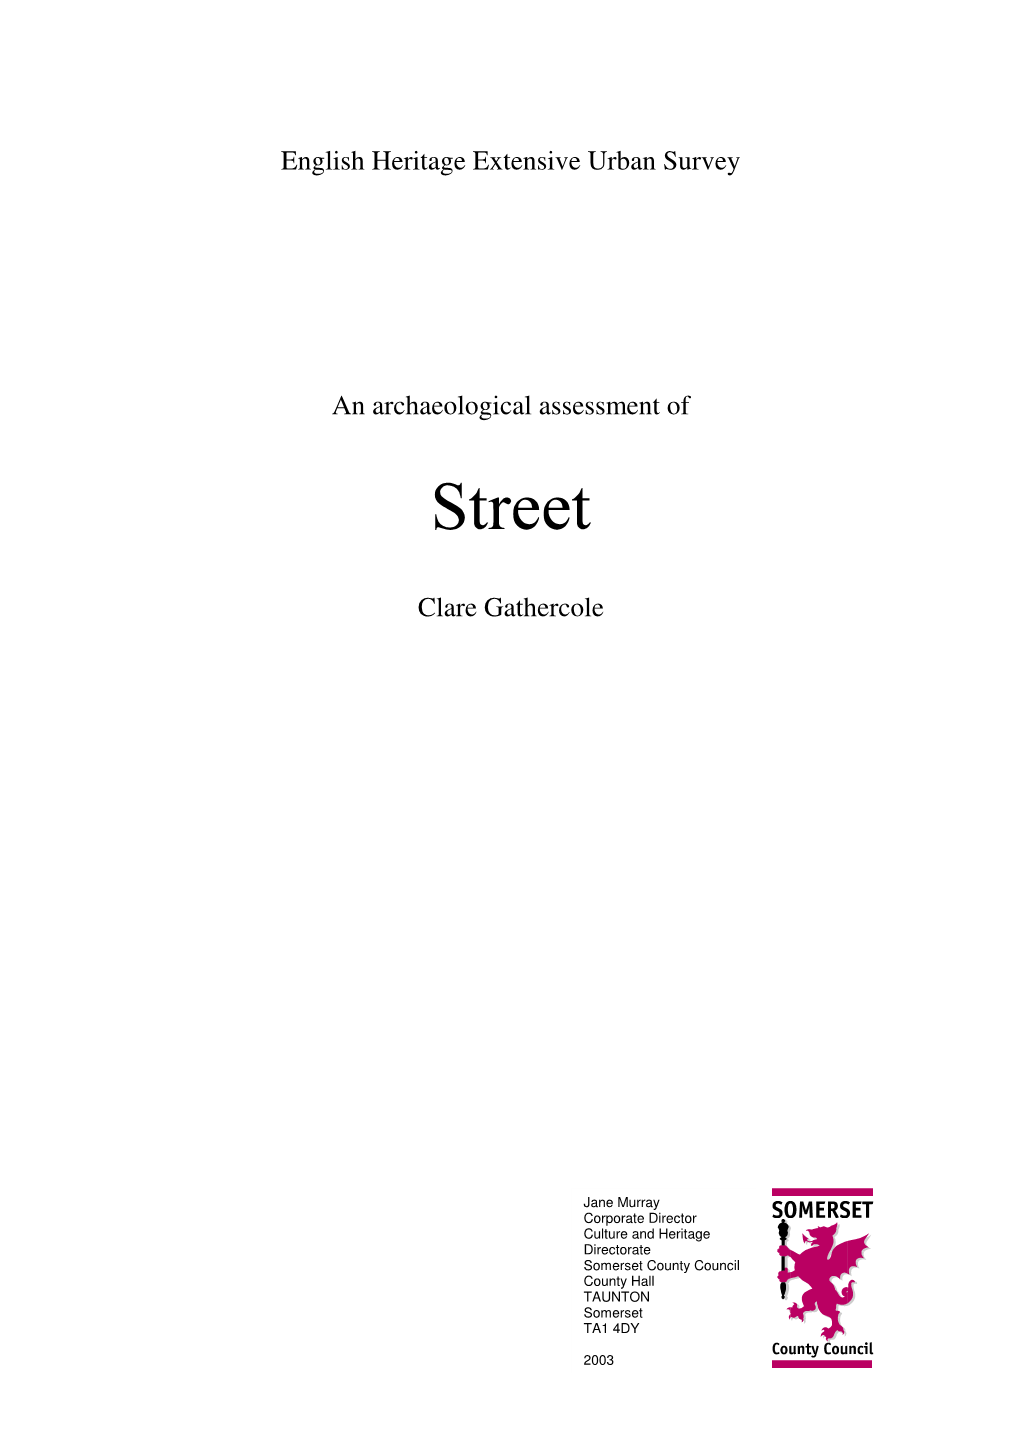 Download Street Report